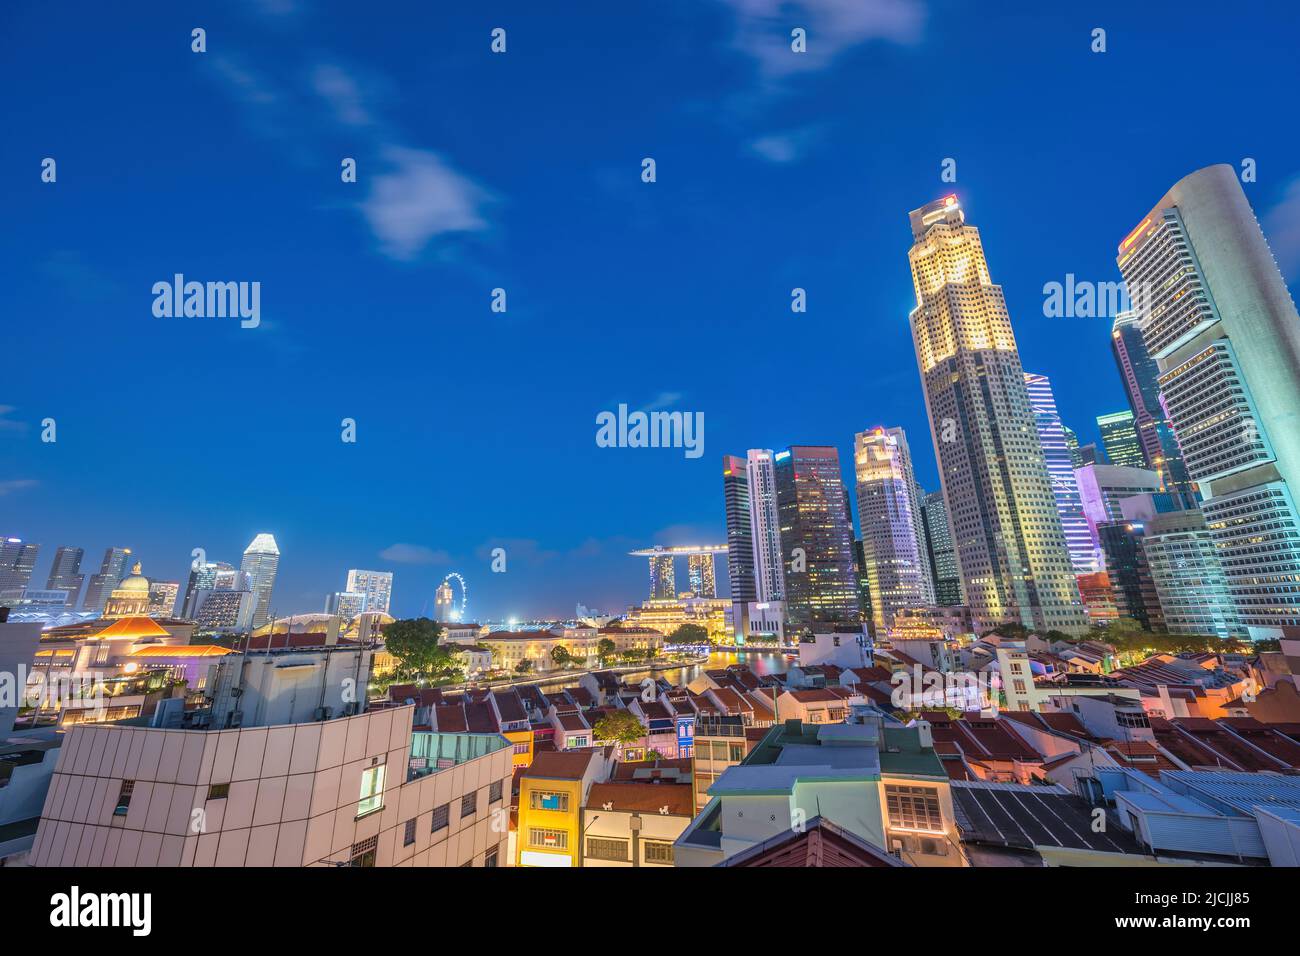 Vue panoramique nocturne de la ville de Singapour à Boat Quay et Clarke Quay, quartier des affaires en bord de mer Banque D'Images